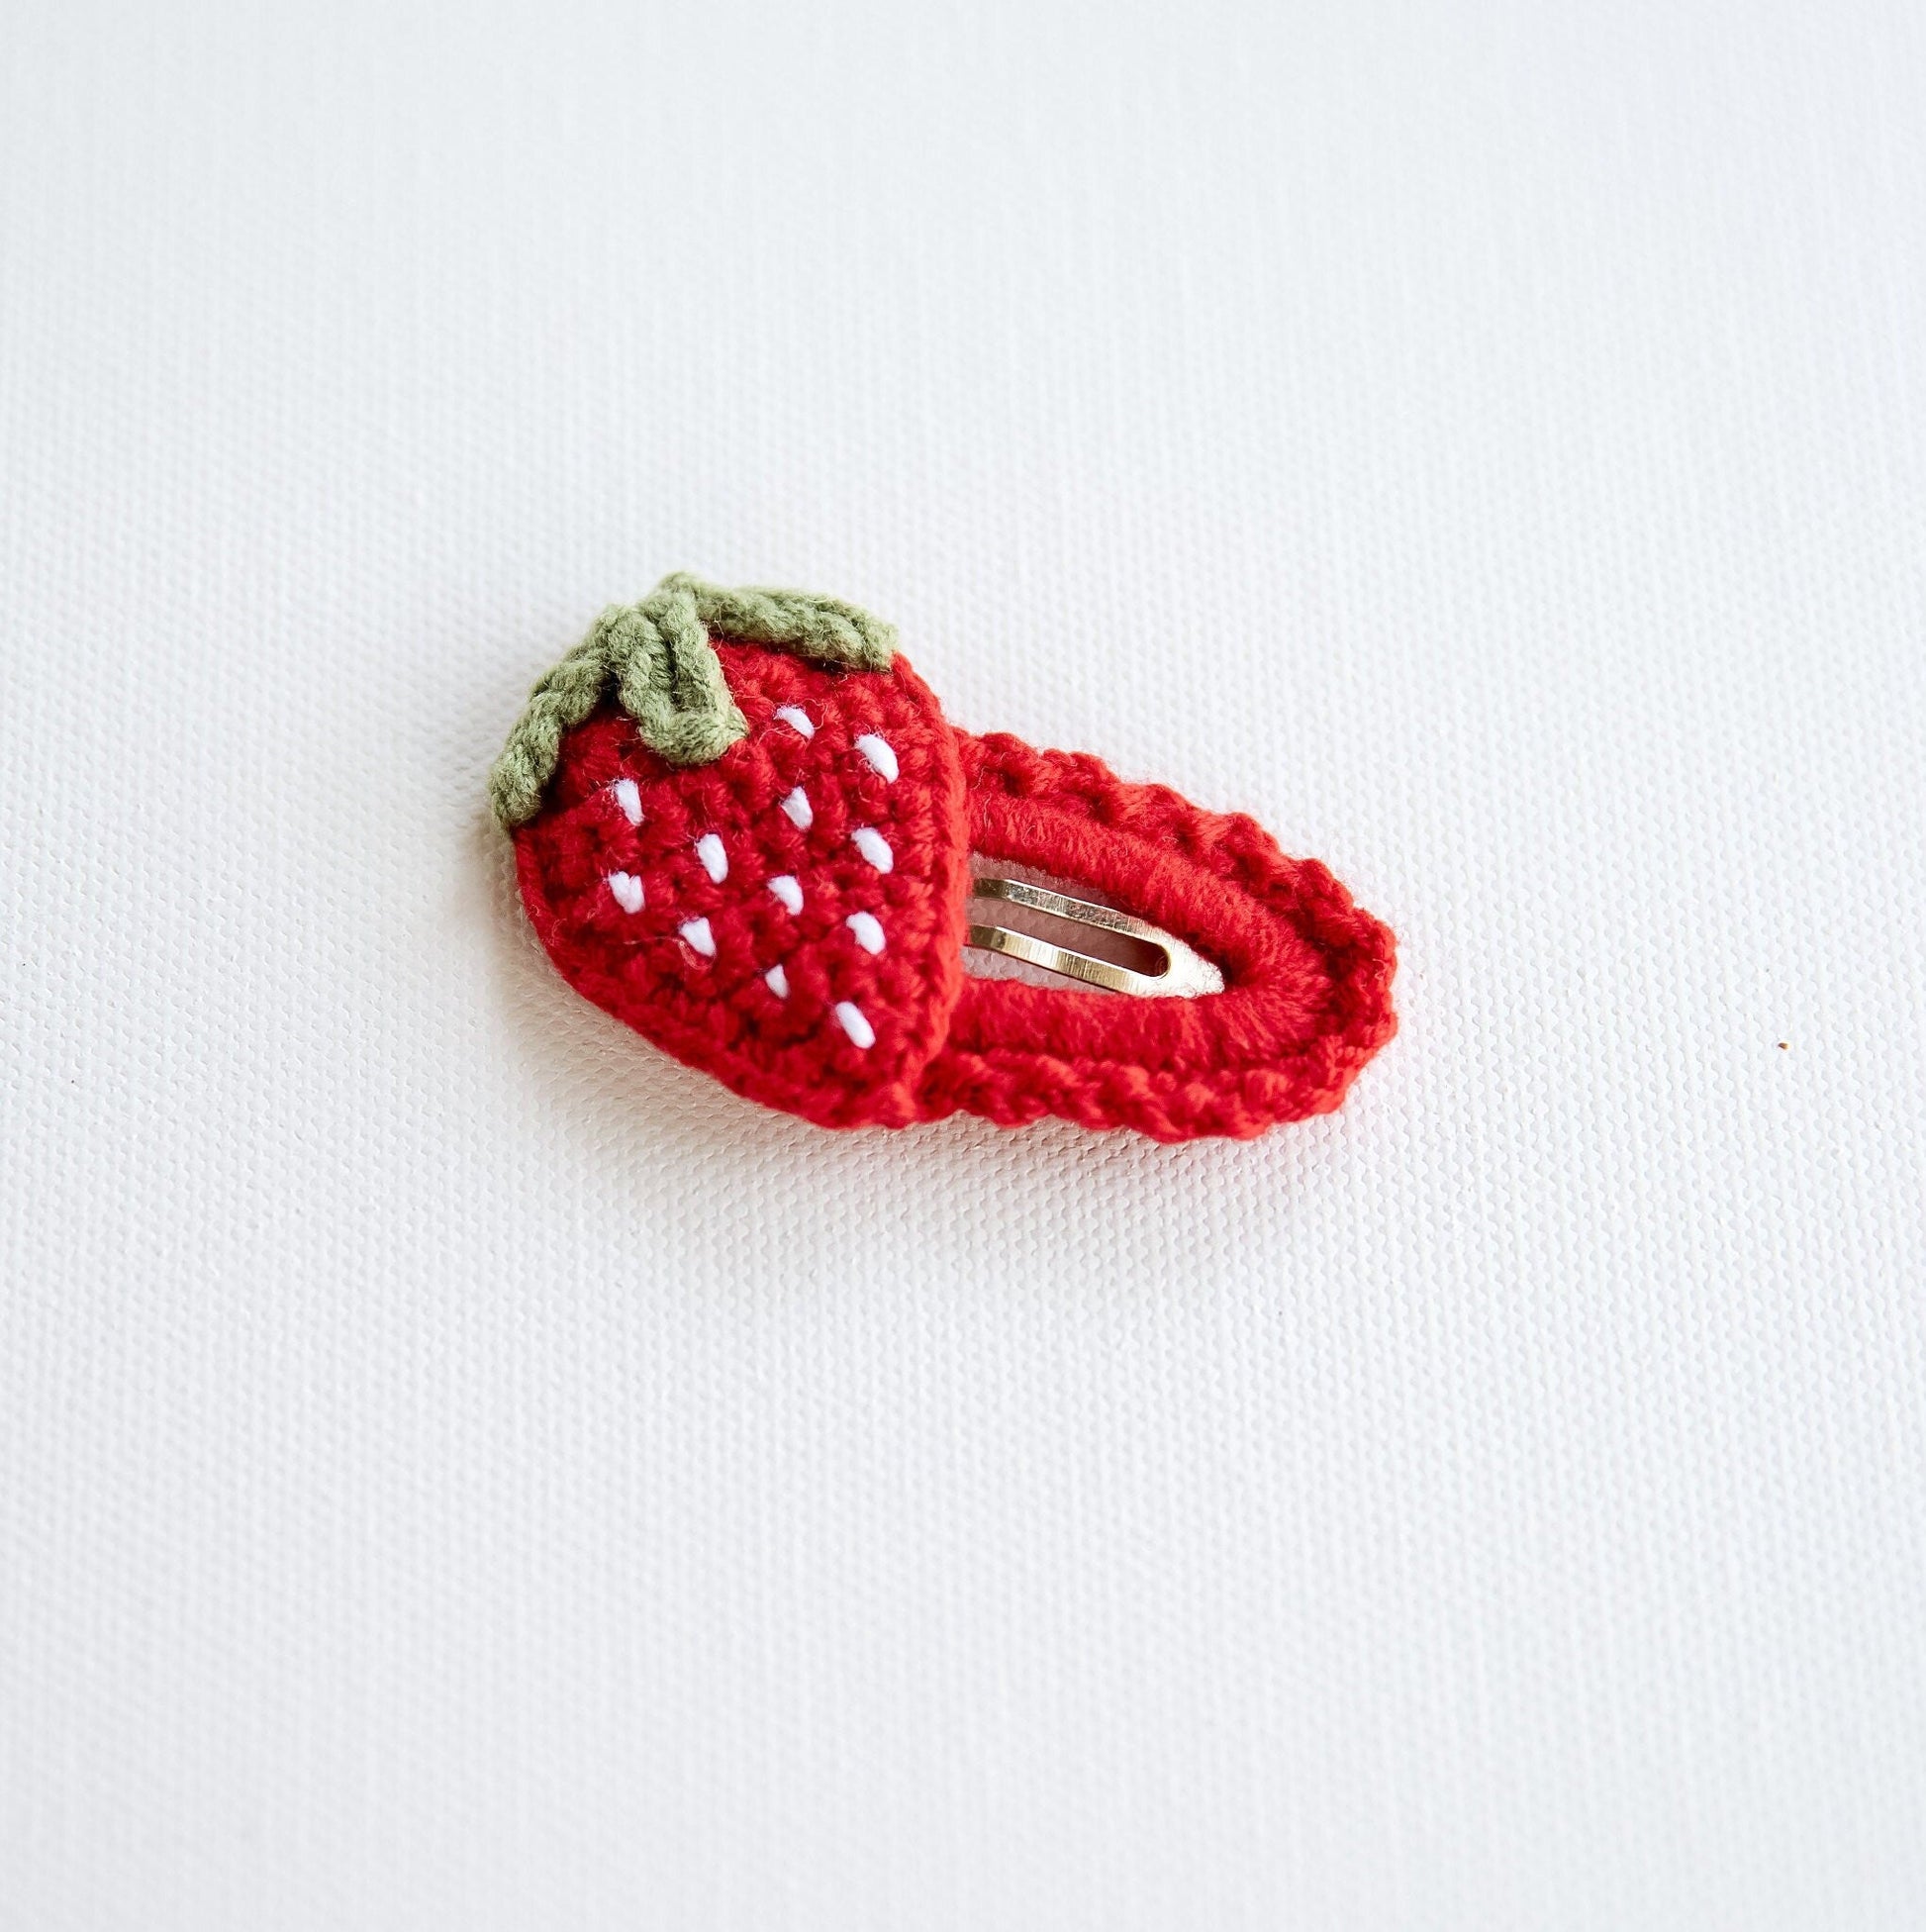 Strawberry Hair Clip Kawai Strawberry Hair Clip Cute Kawai Hair Snap Kawai Fruit Hair Barrettes Cute Crochet Hair Clip Unique Toddler Gift - Hemsin Atelier